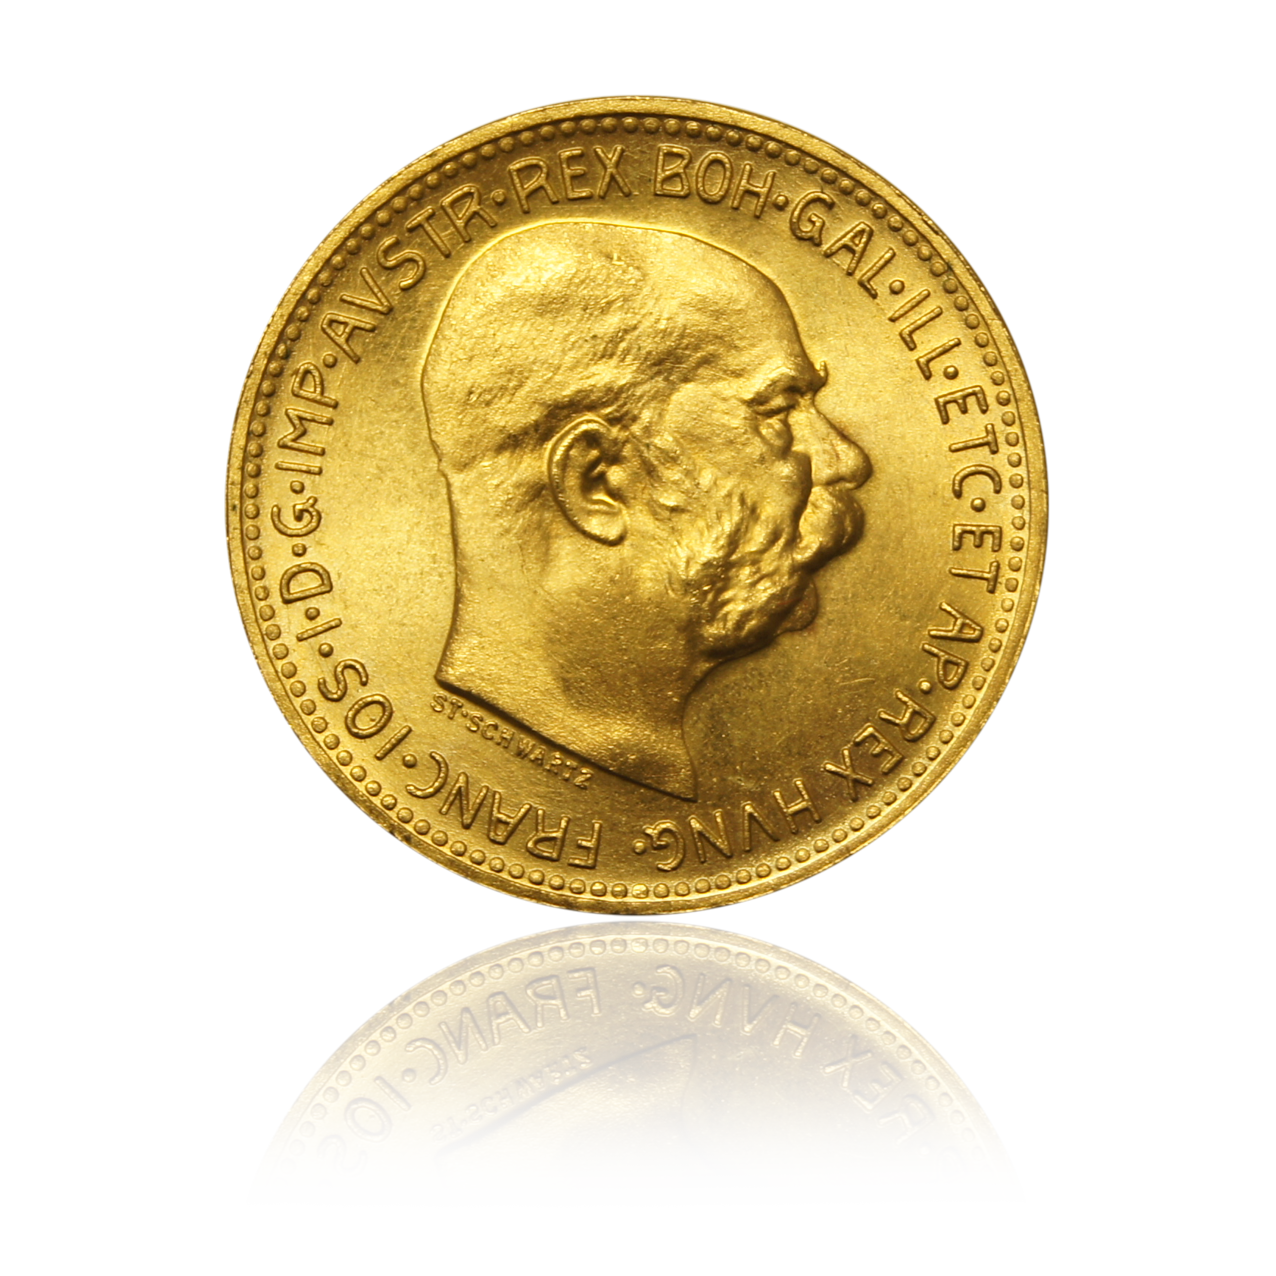 20 Kronen - Austria gold coin